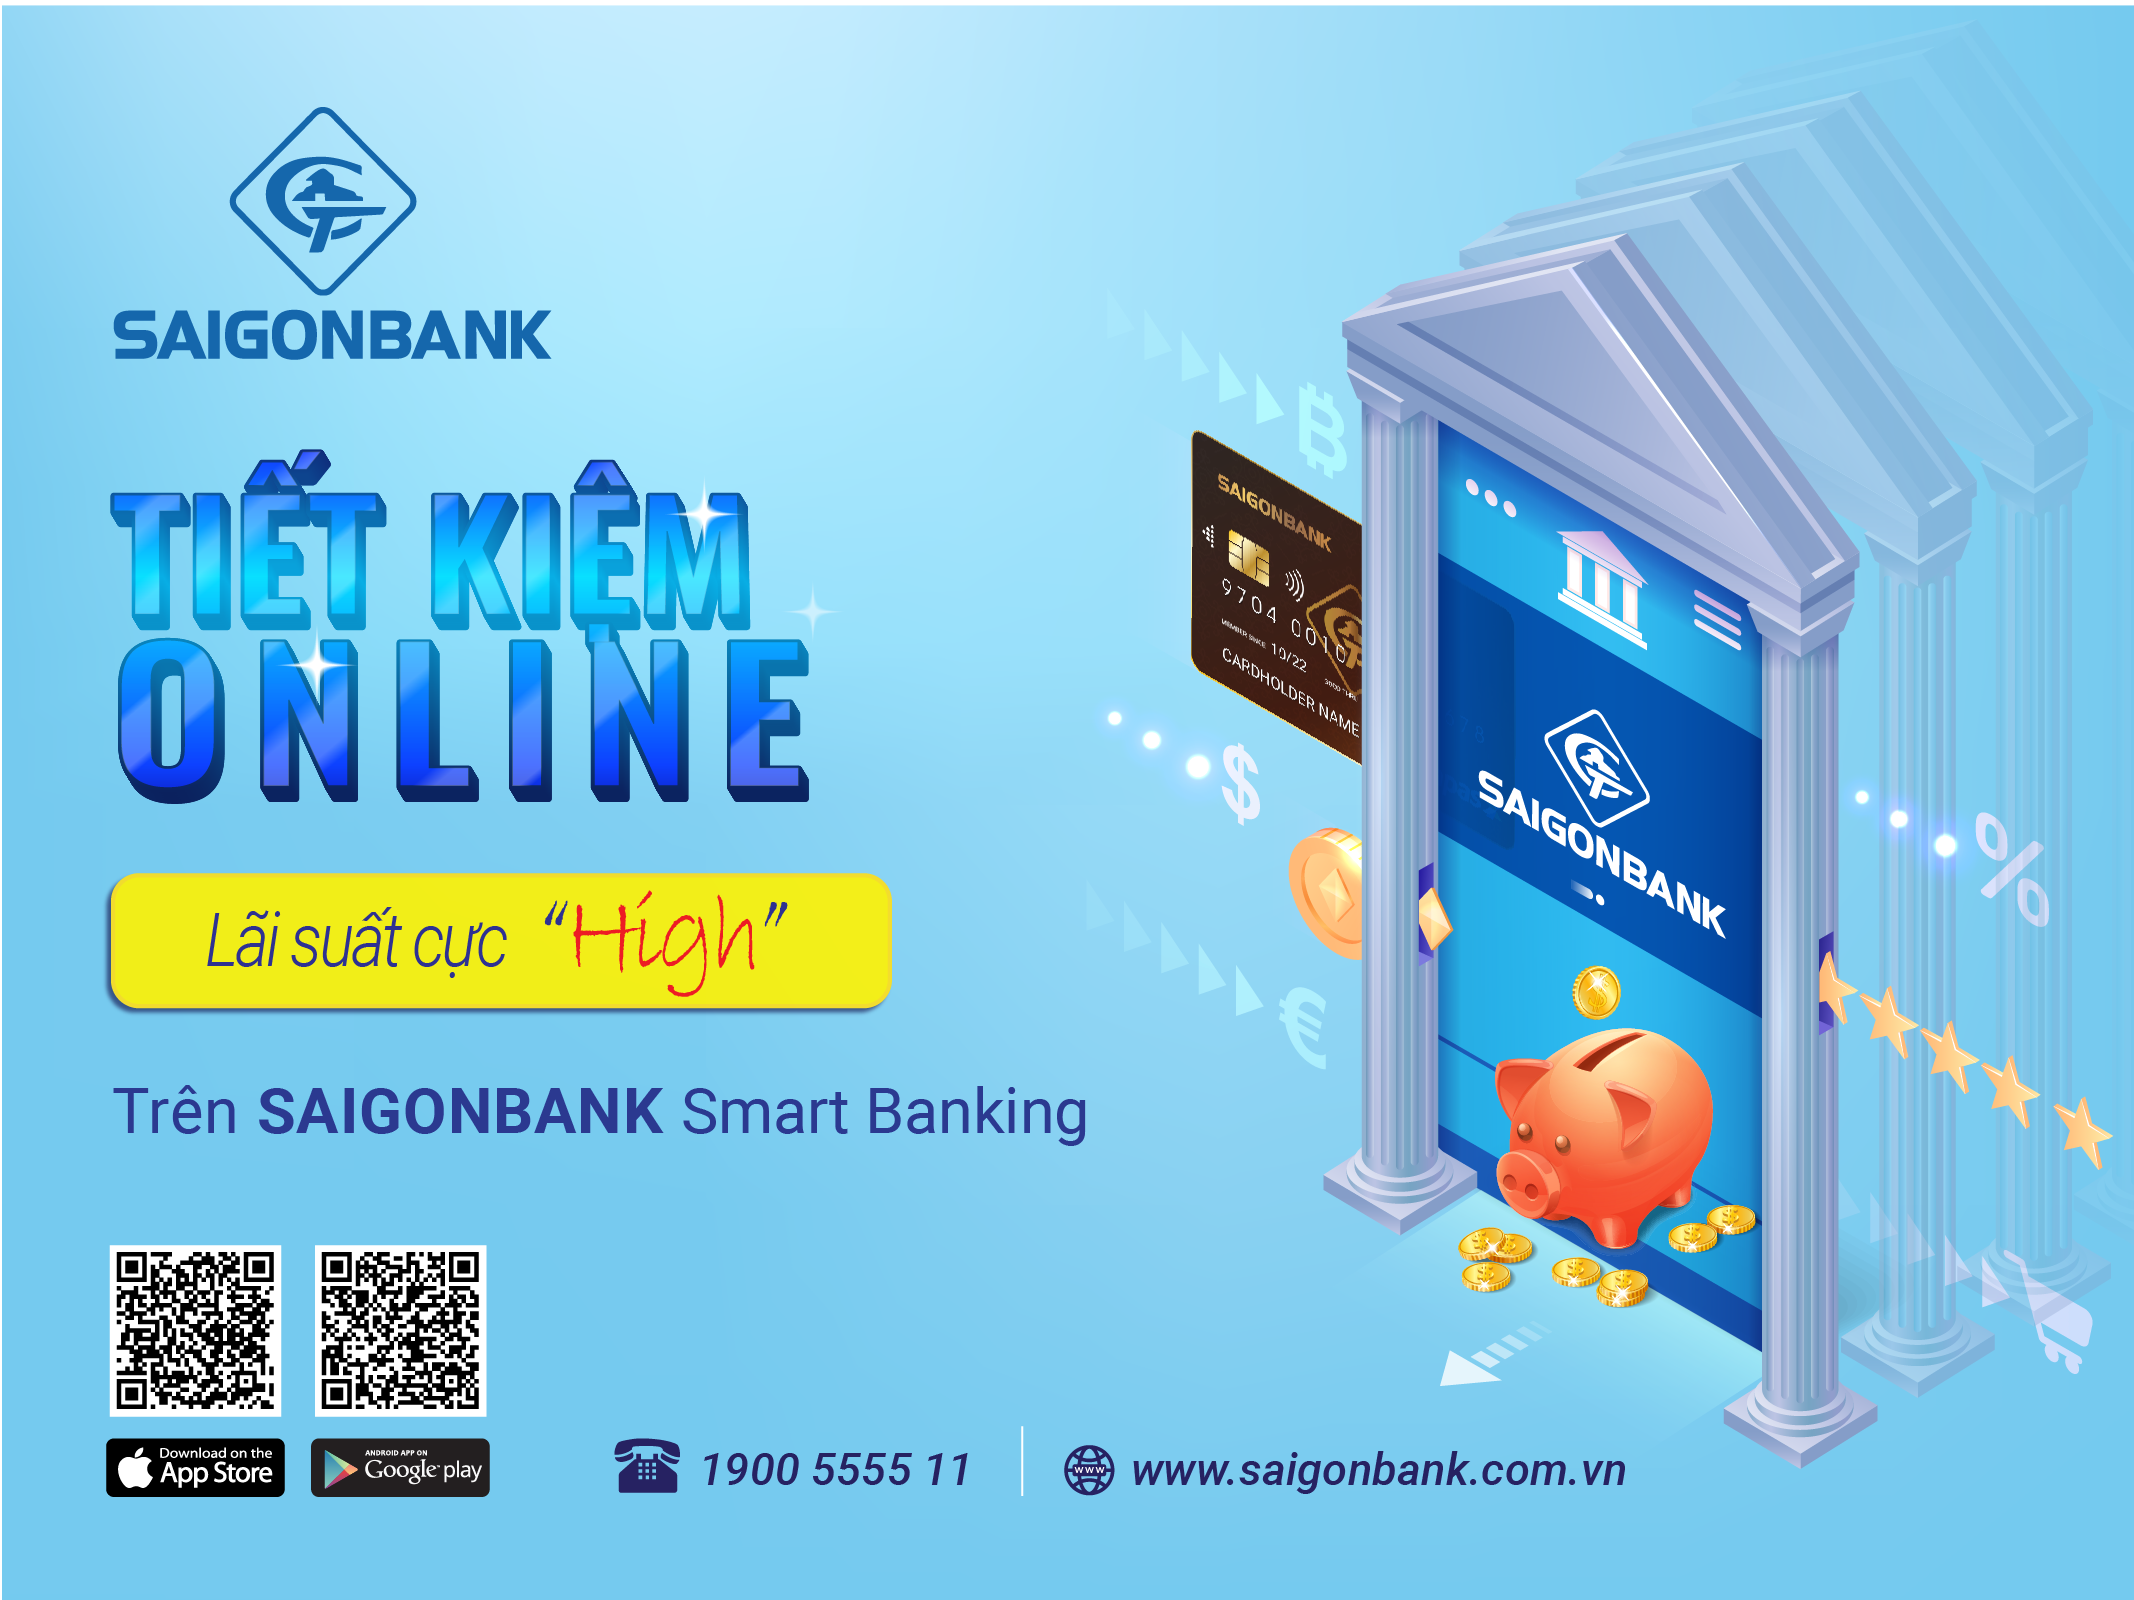 Ra mắt sản phẩm “Tiết Kiệm Online” trên ứng dụng SAIGONBANK Smart Banking